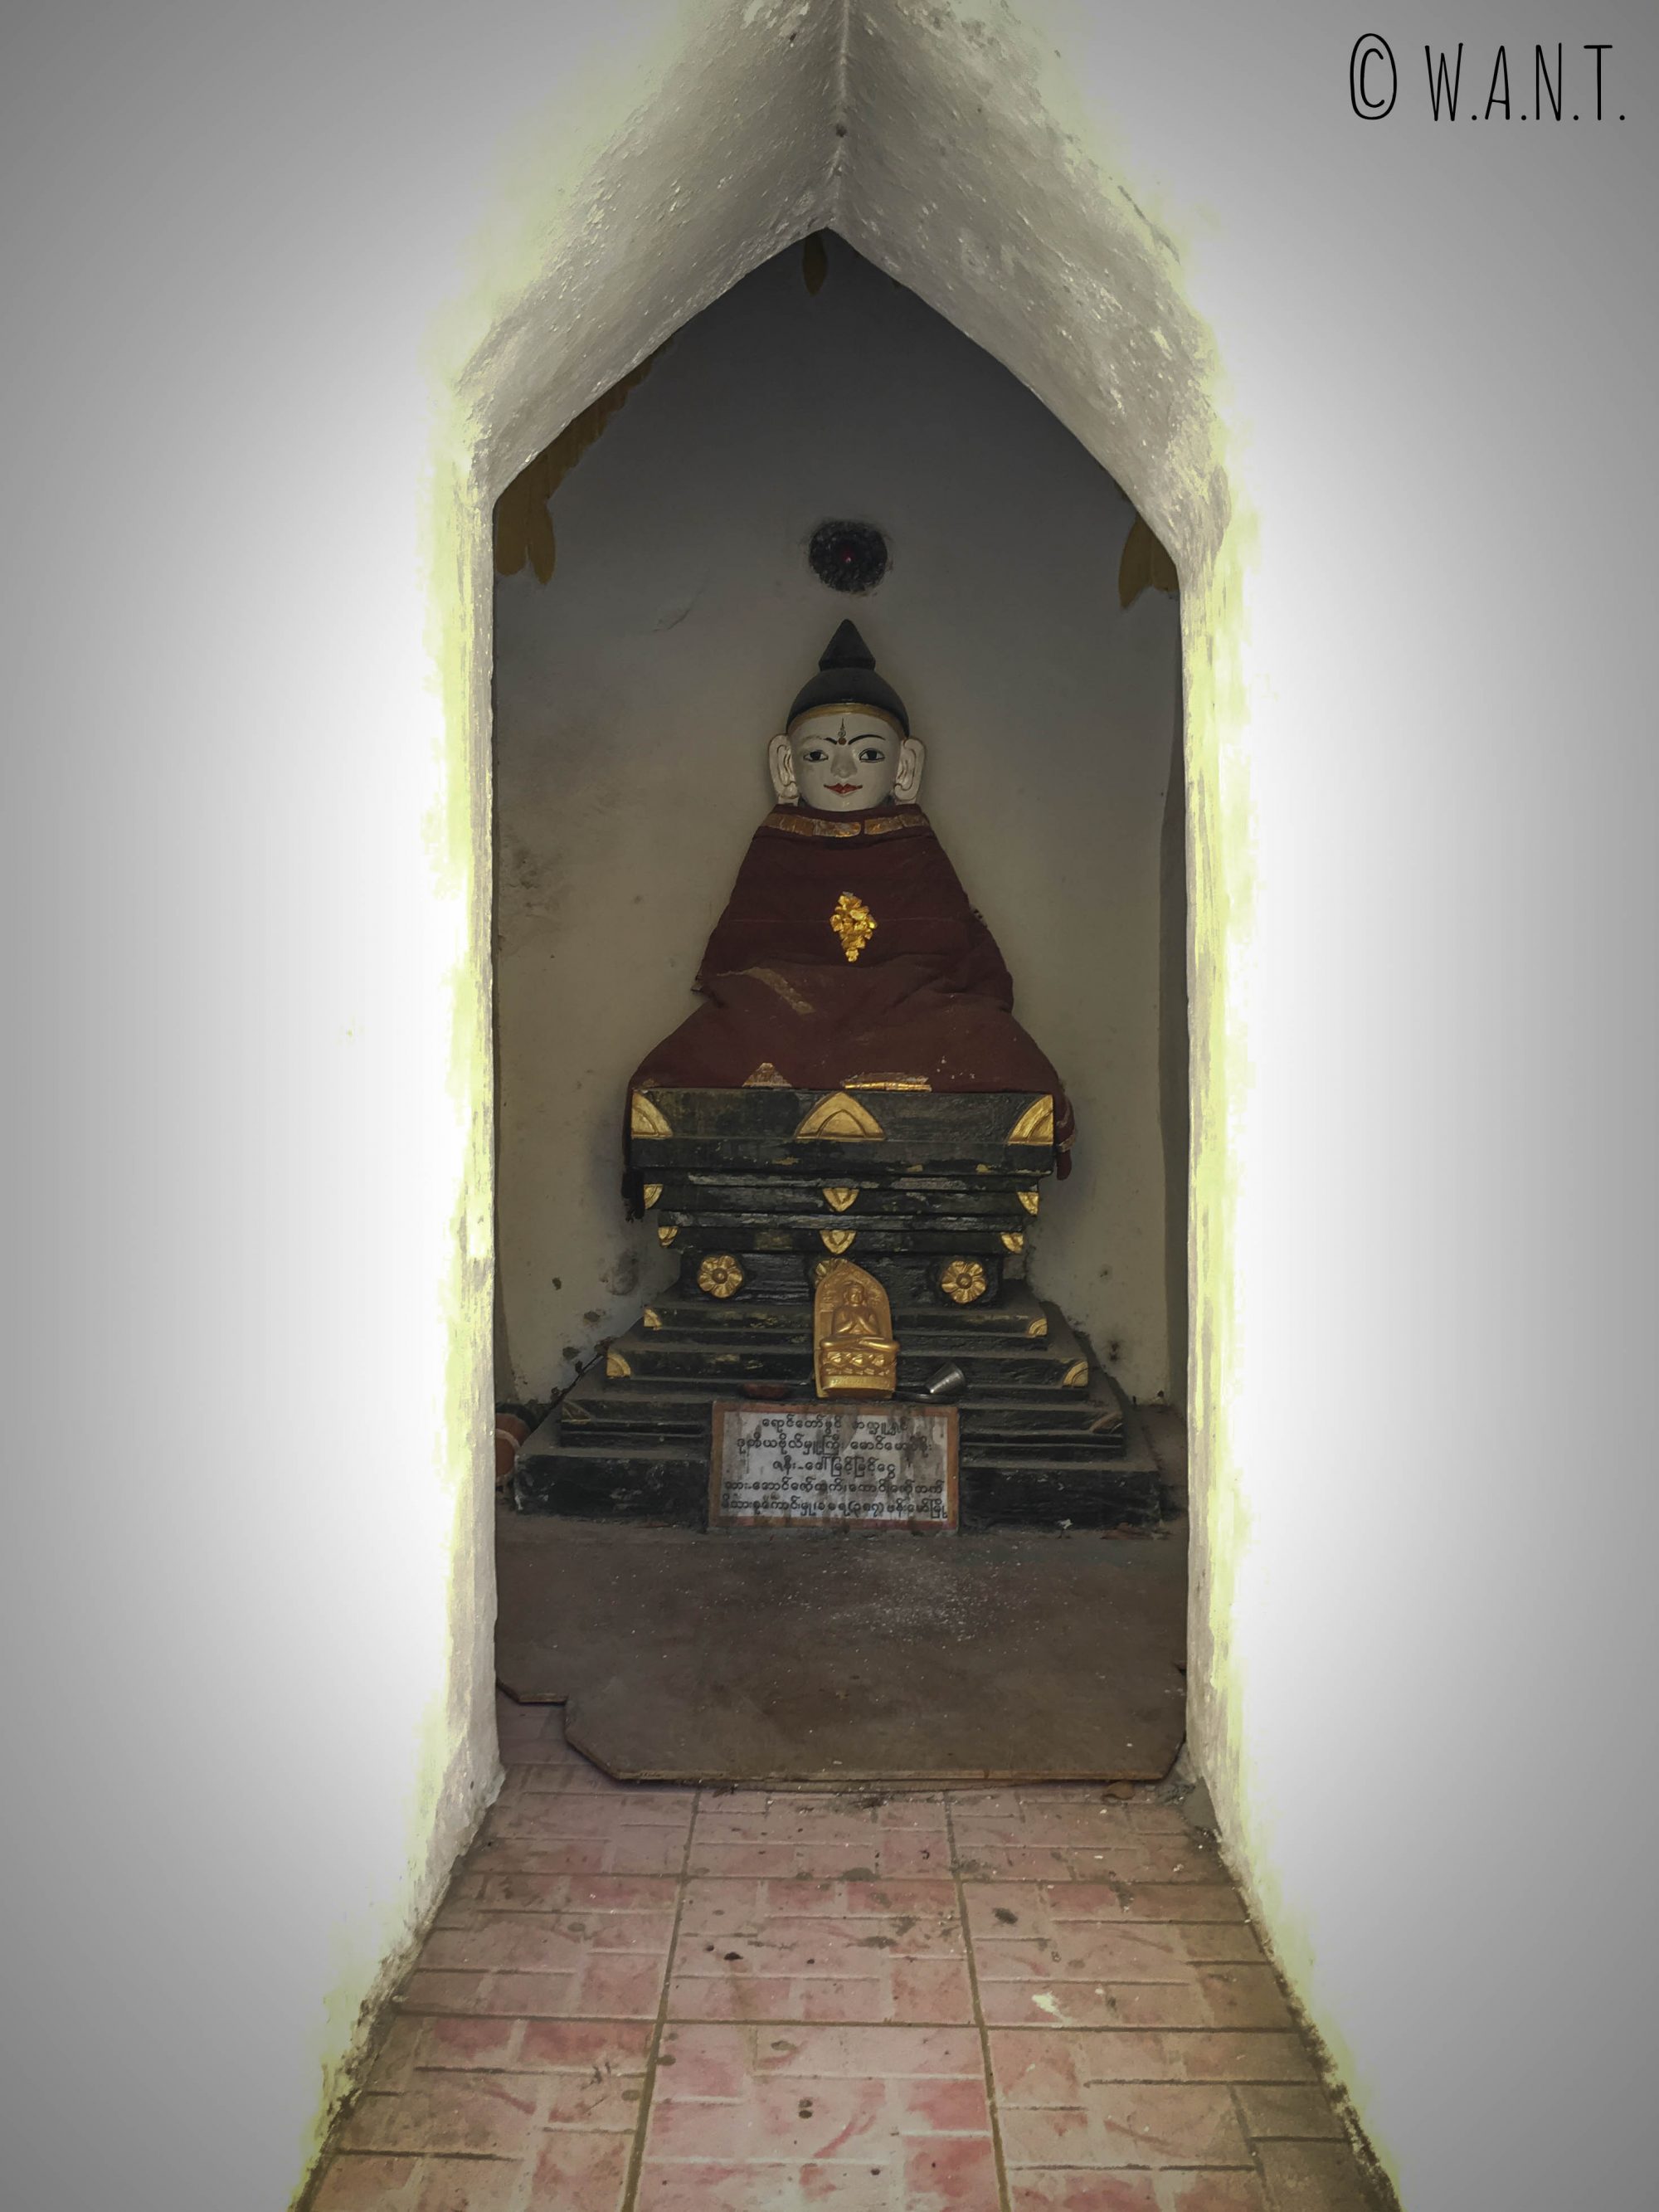 Représentation de Bouddha au sein de la Pagode Shwe oo min